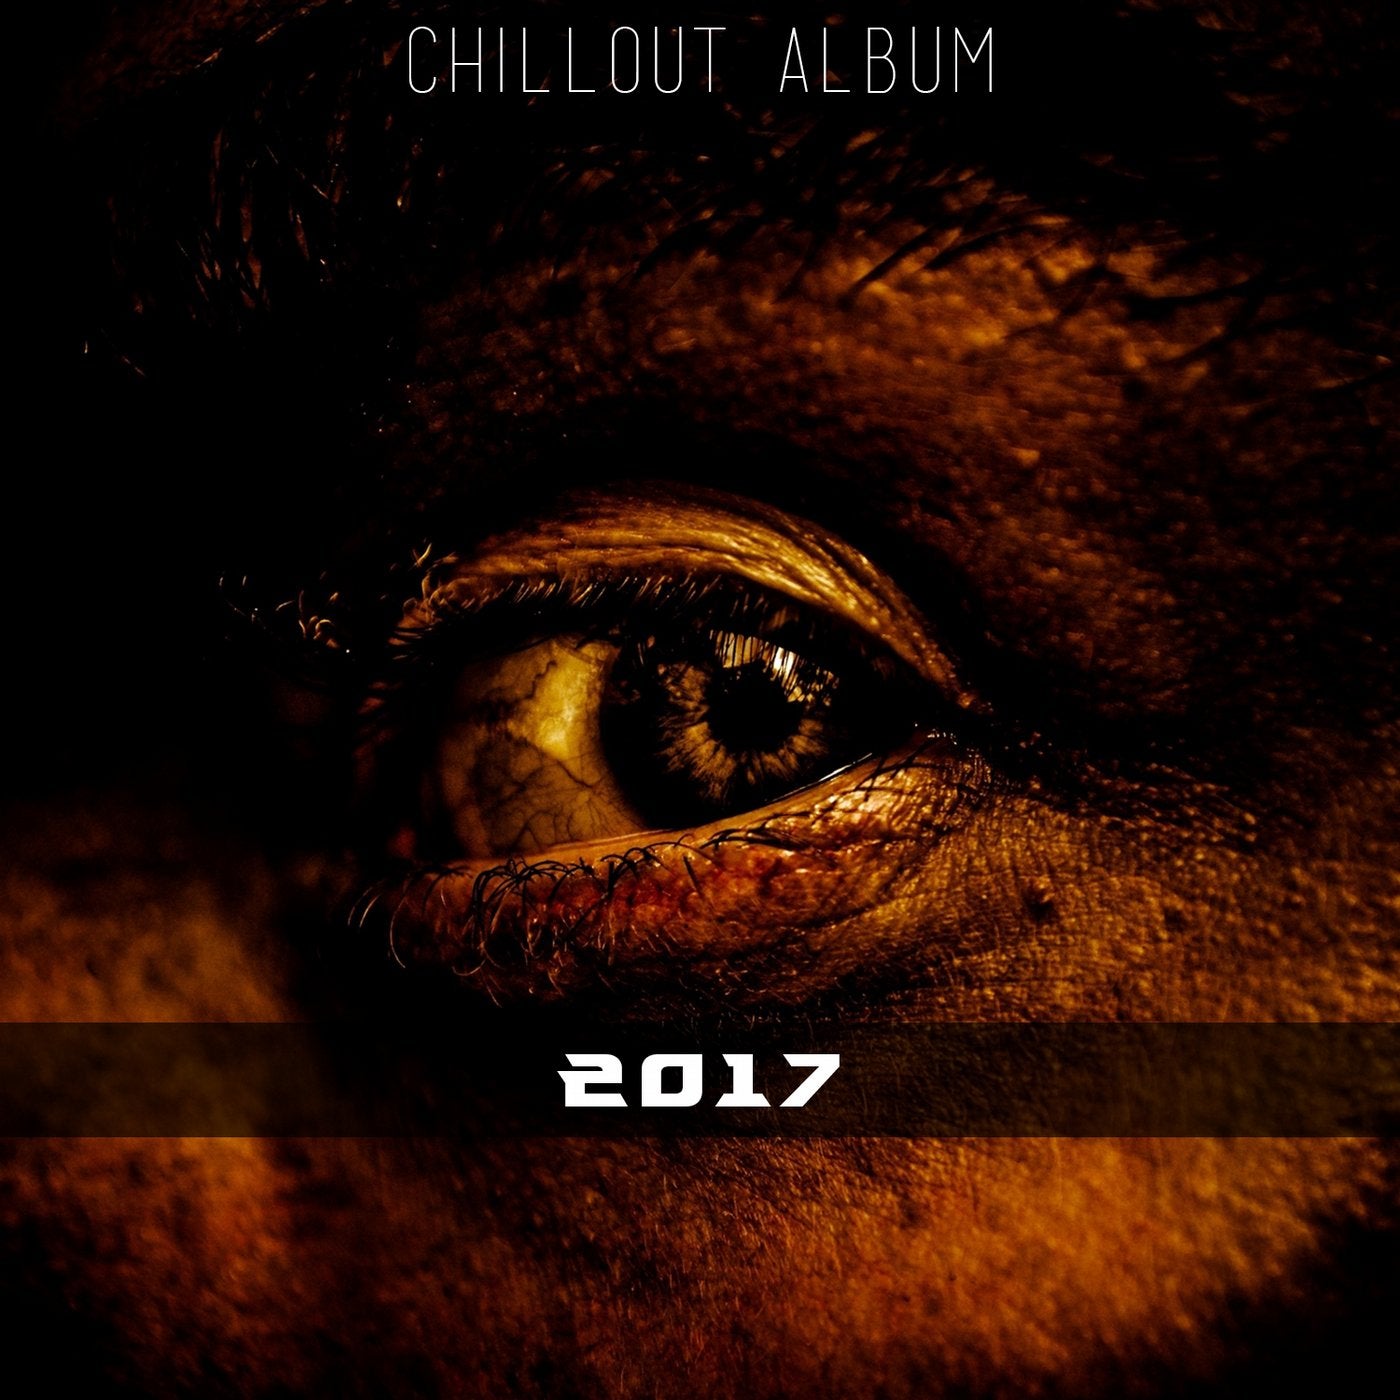 2017 (Chillout Album)